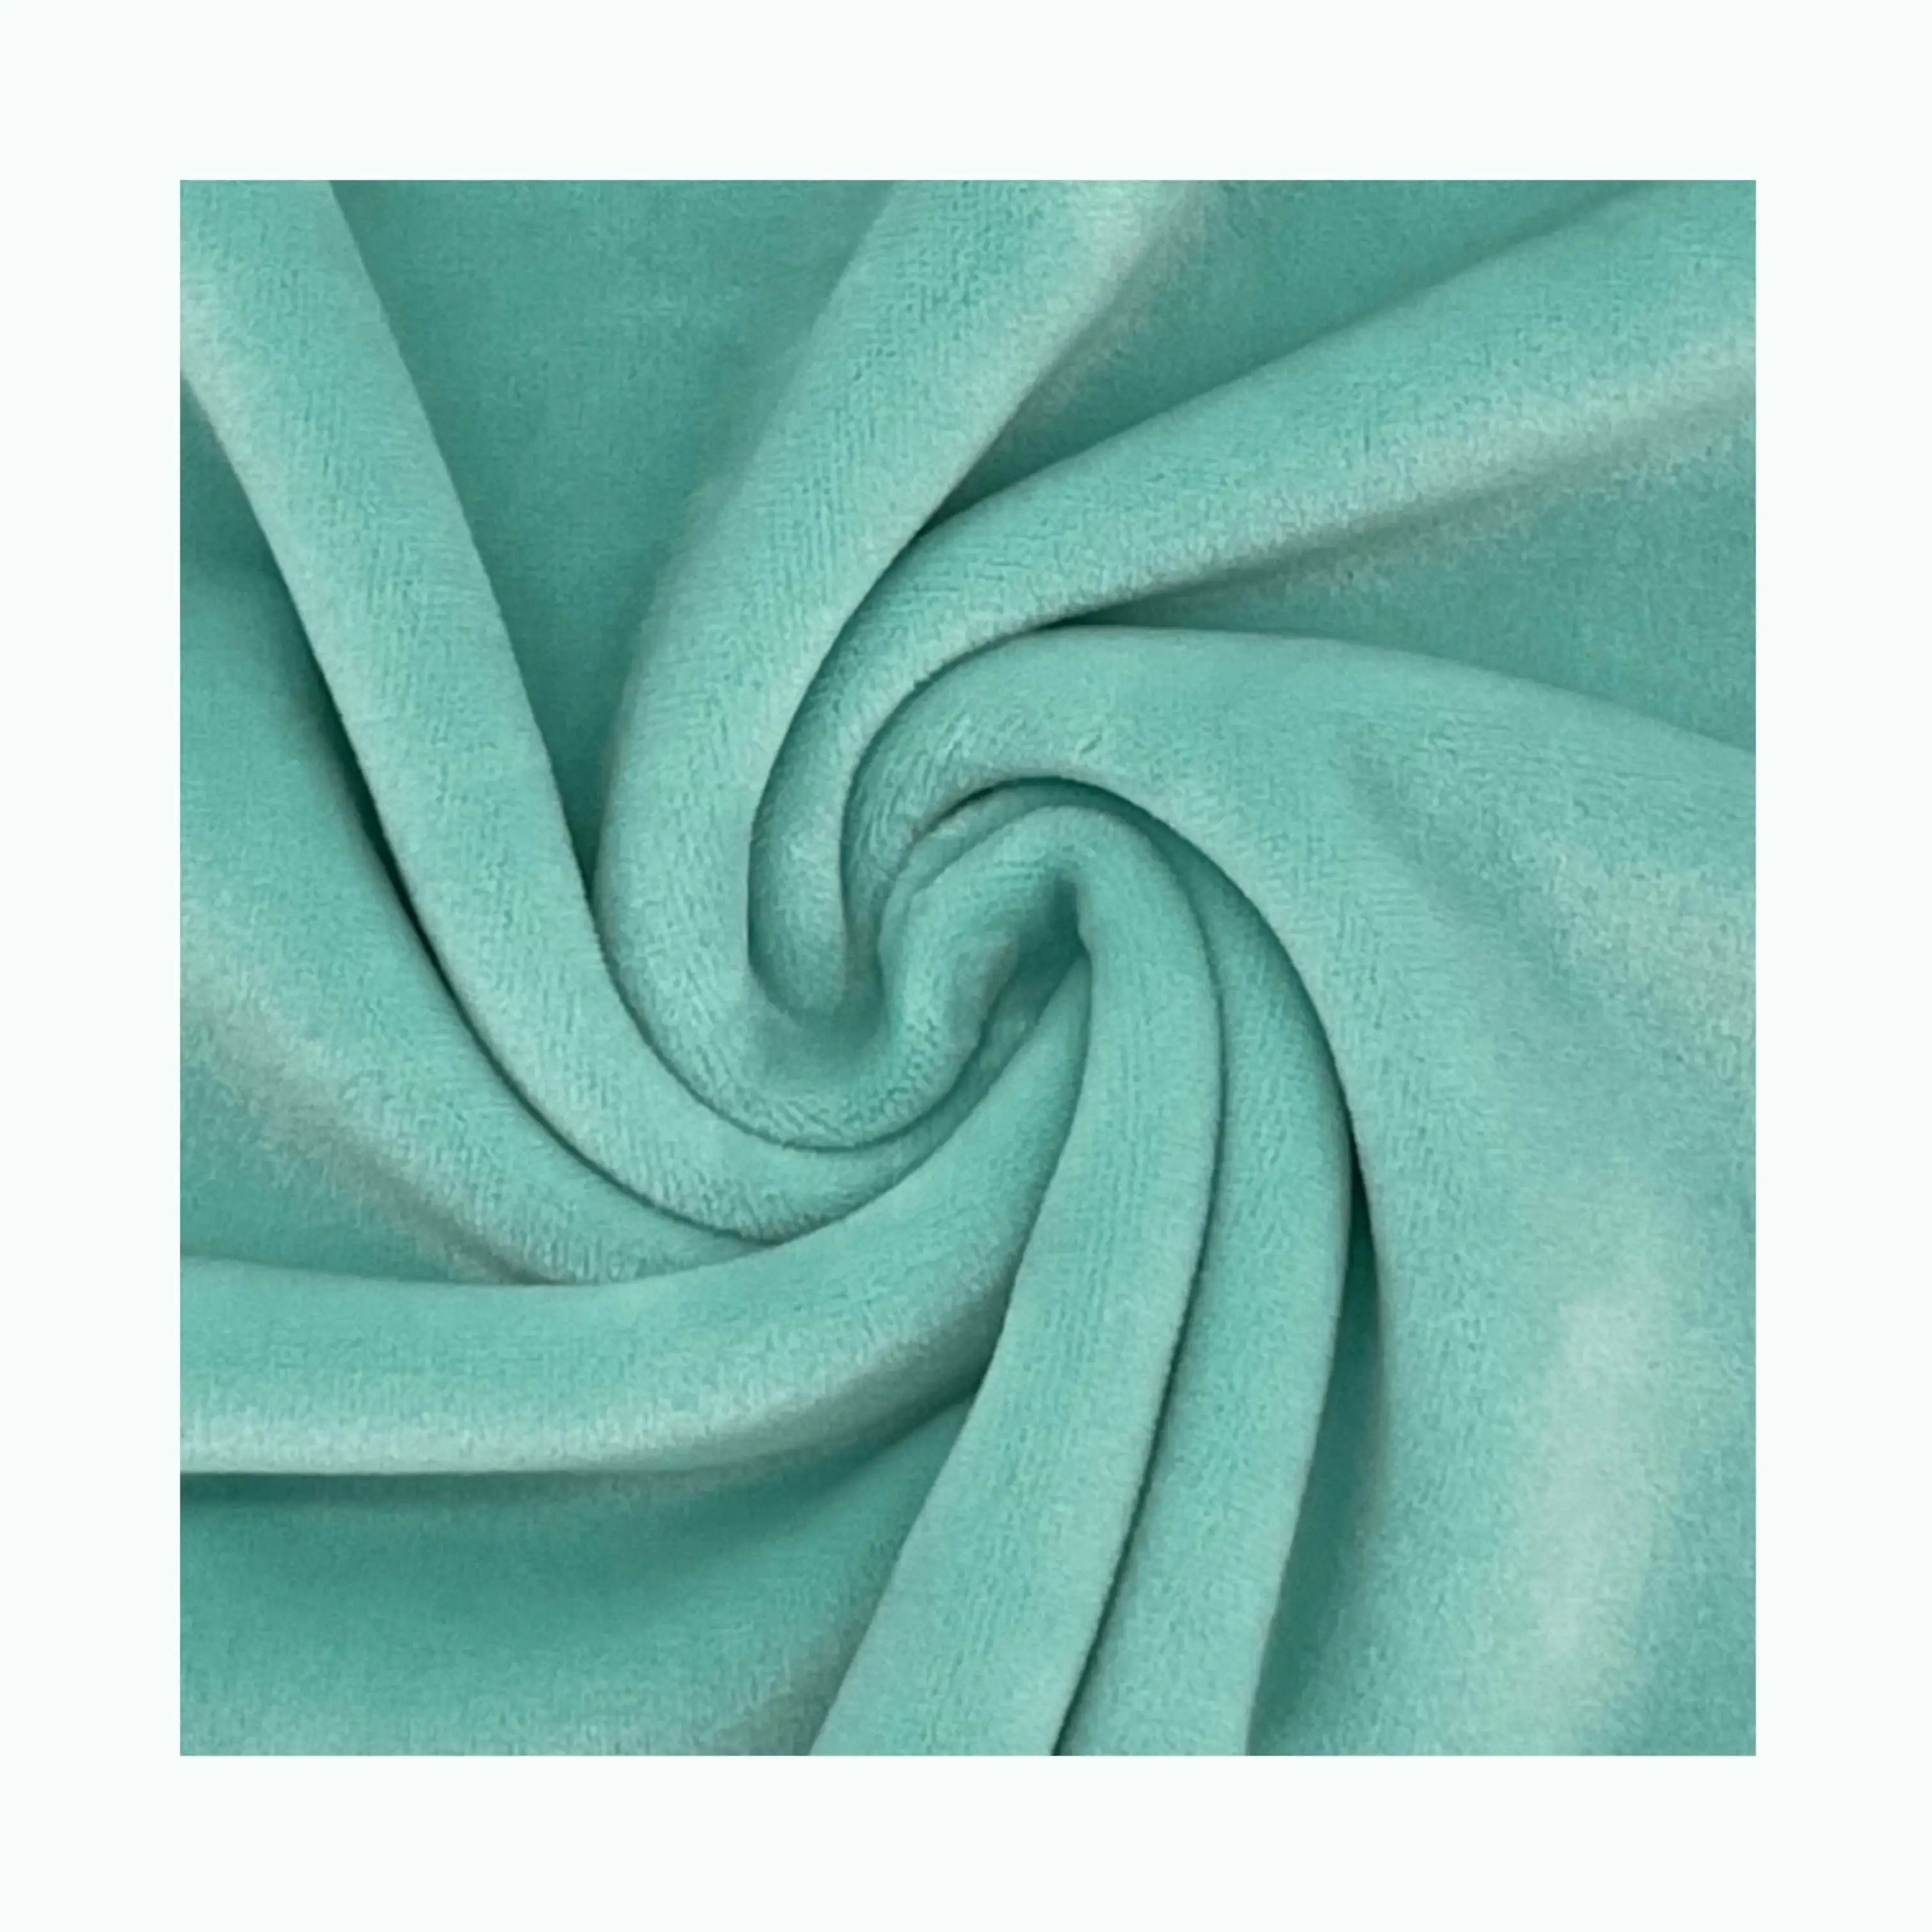 Weiches, haut freundliches und verwaltbares Polyester-Samt gewebe wird verwendet, um eine bequeme Freizeit decke zu schaffen